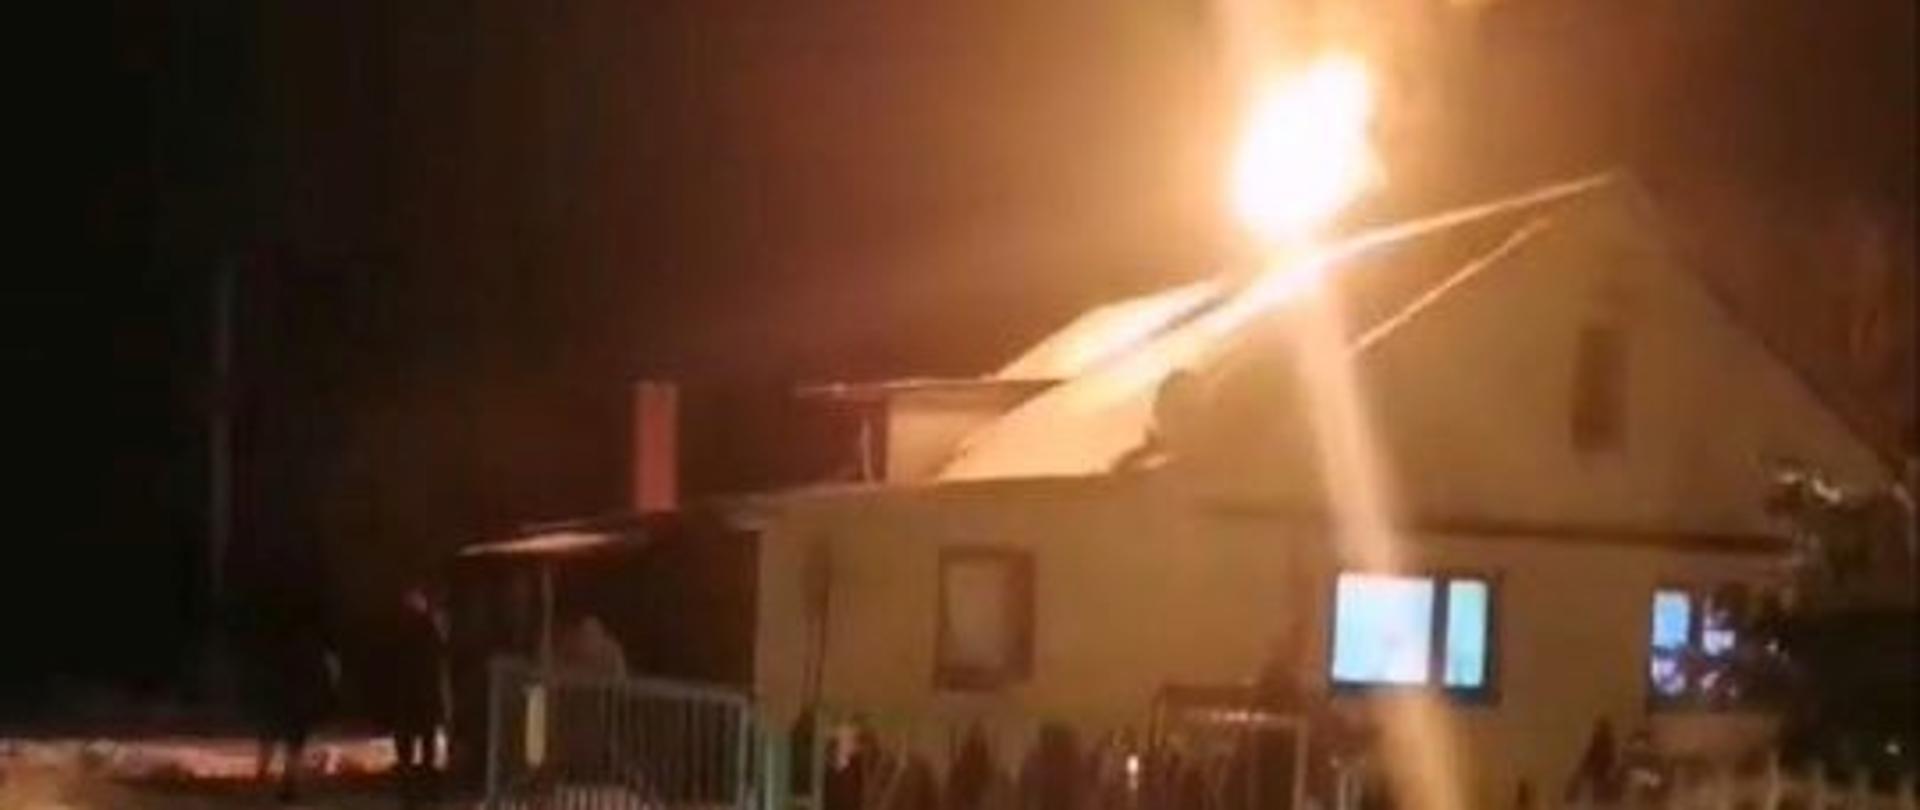 na zdjęciu widać ogień wydobywający się z komina domu jednorodzinnego